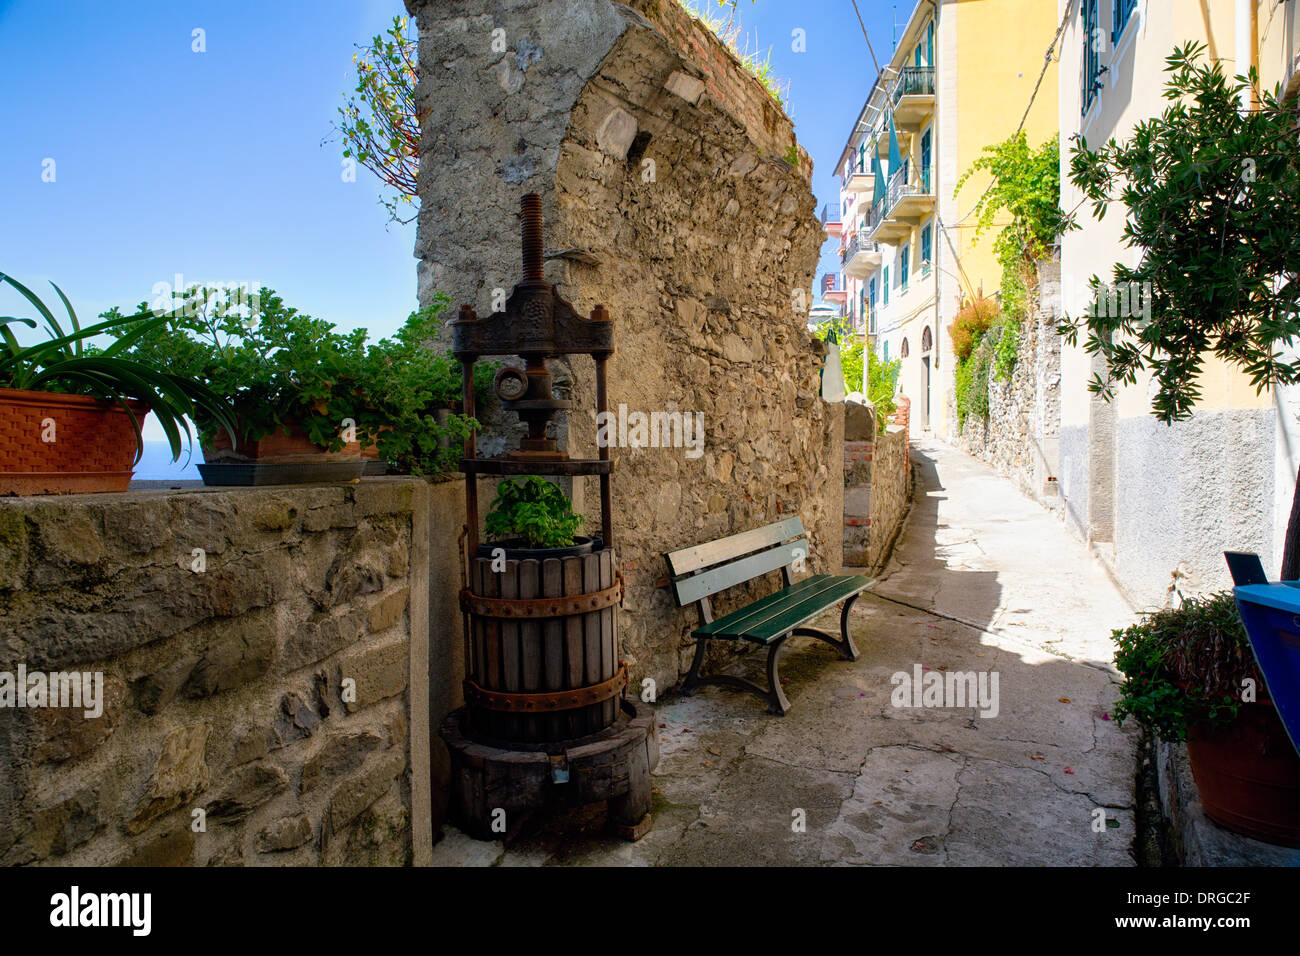 Ruelle avec un vieux pressoir, Corniglia, Cinque Terre, ligurie, italie Banque D'Images